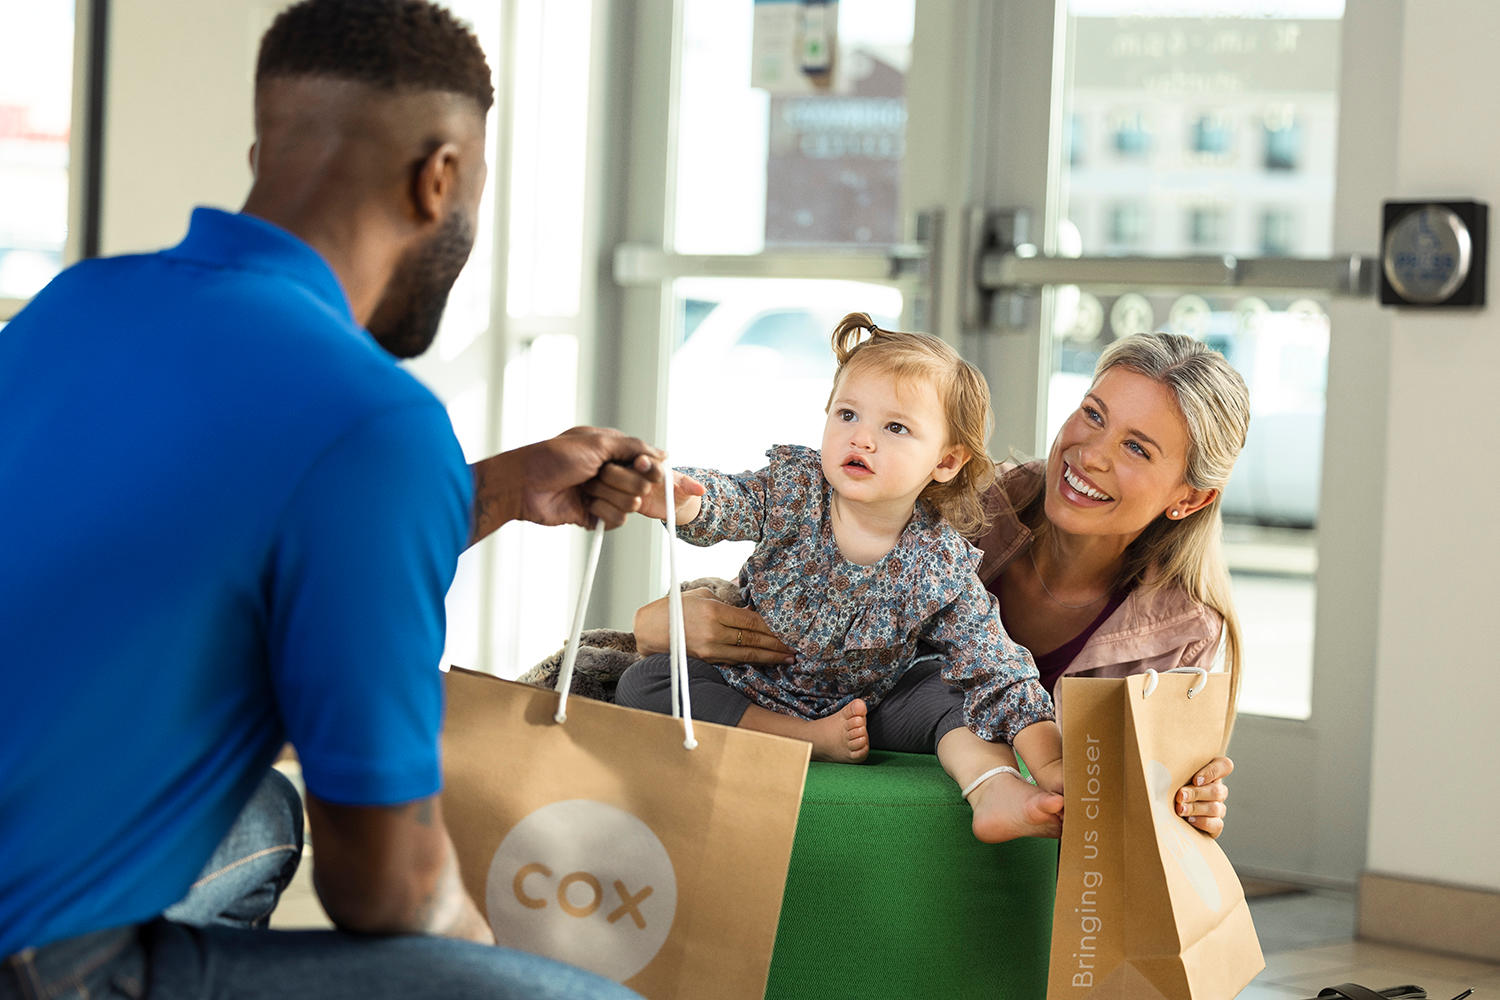 Image 3 | Cox Authorized Retailer